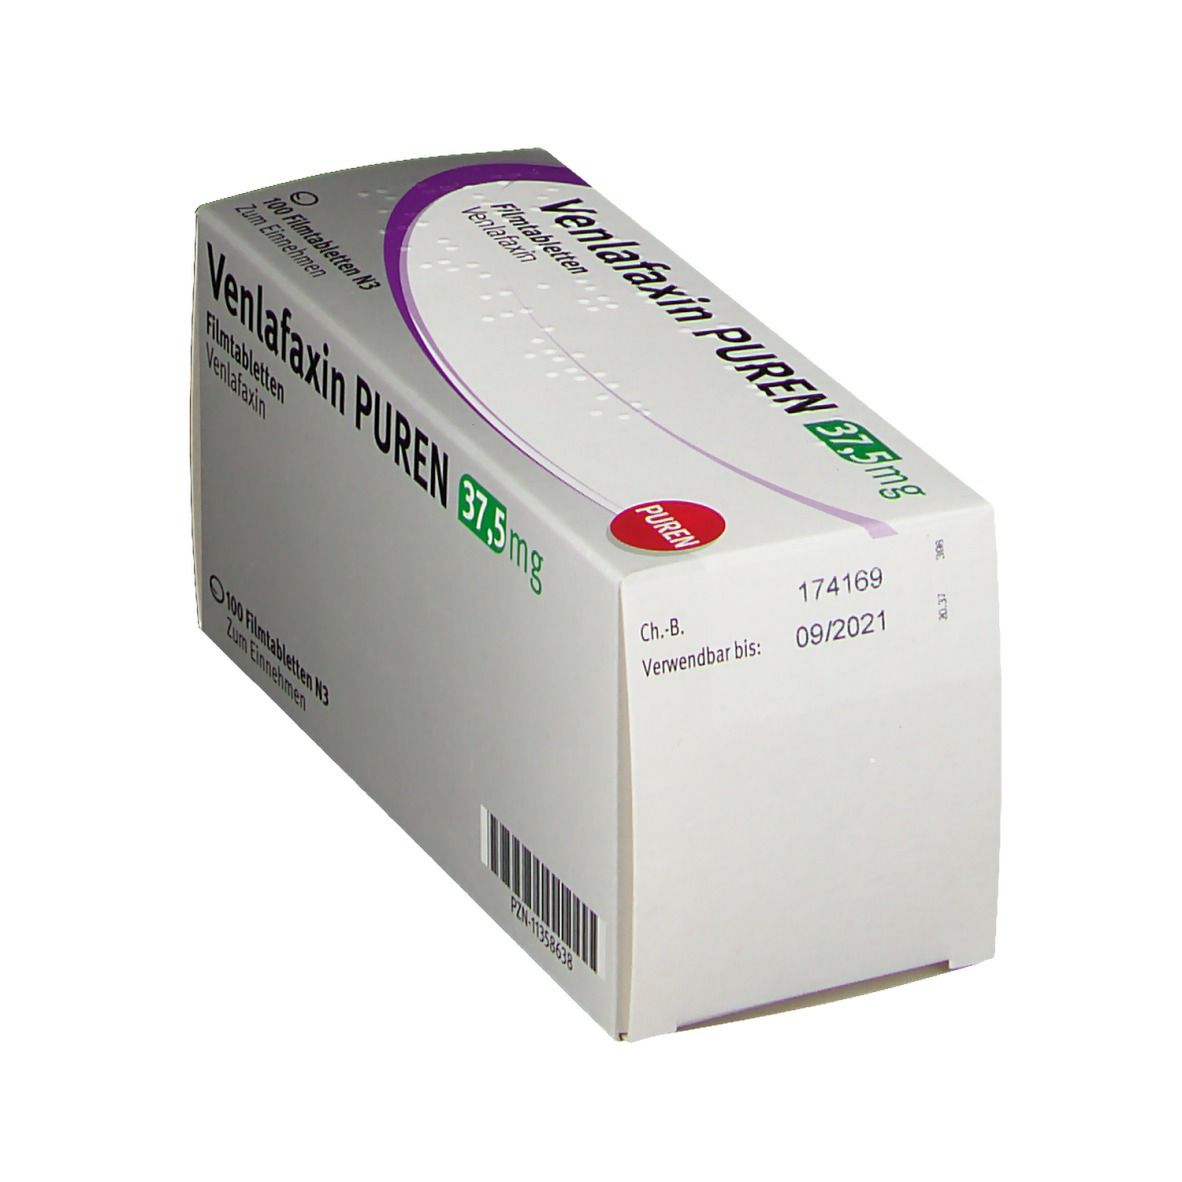 VENLAFAXIN PUREN 37,5 mg Filmtabletten